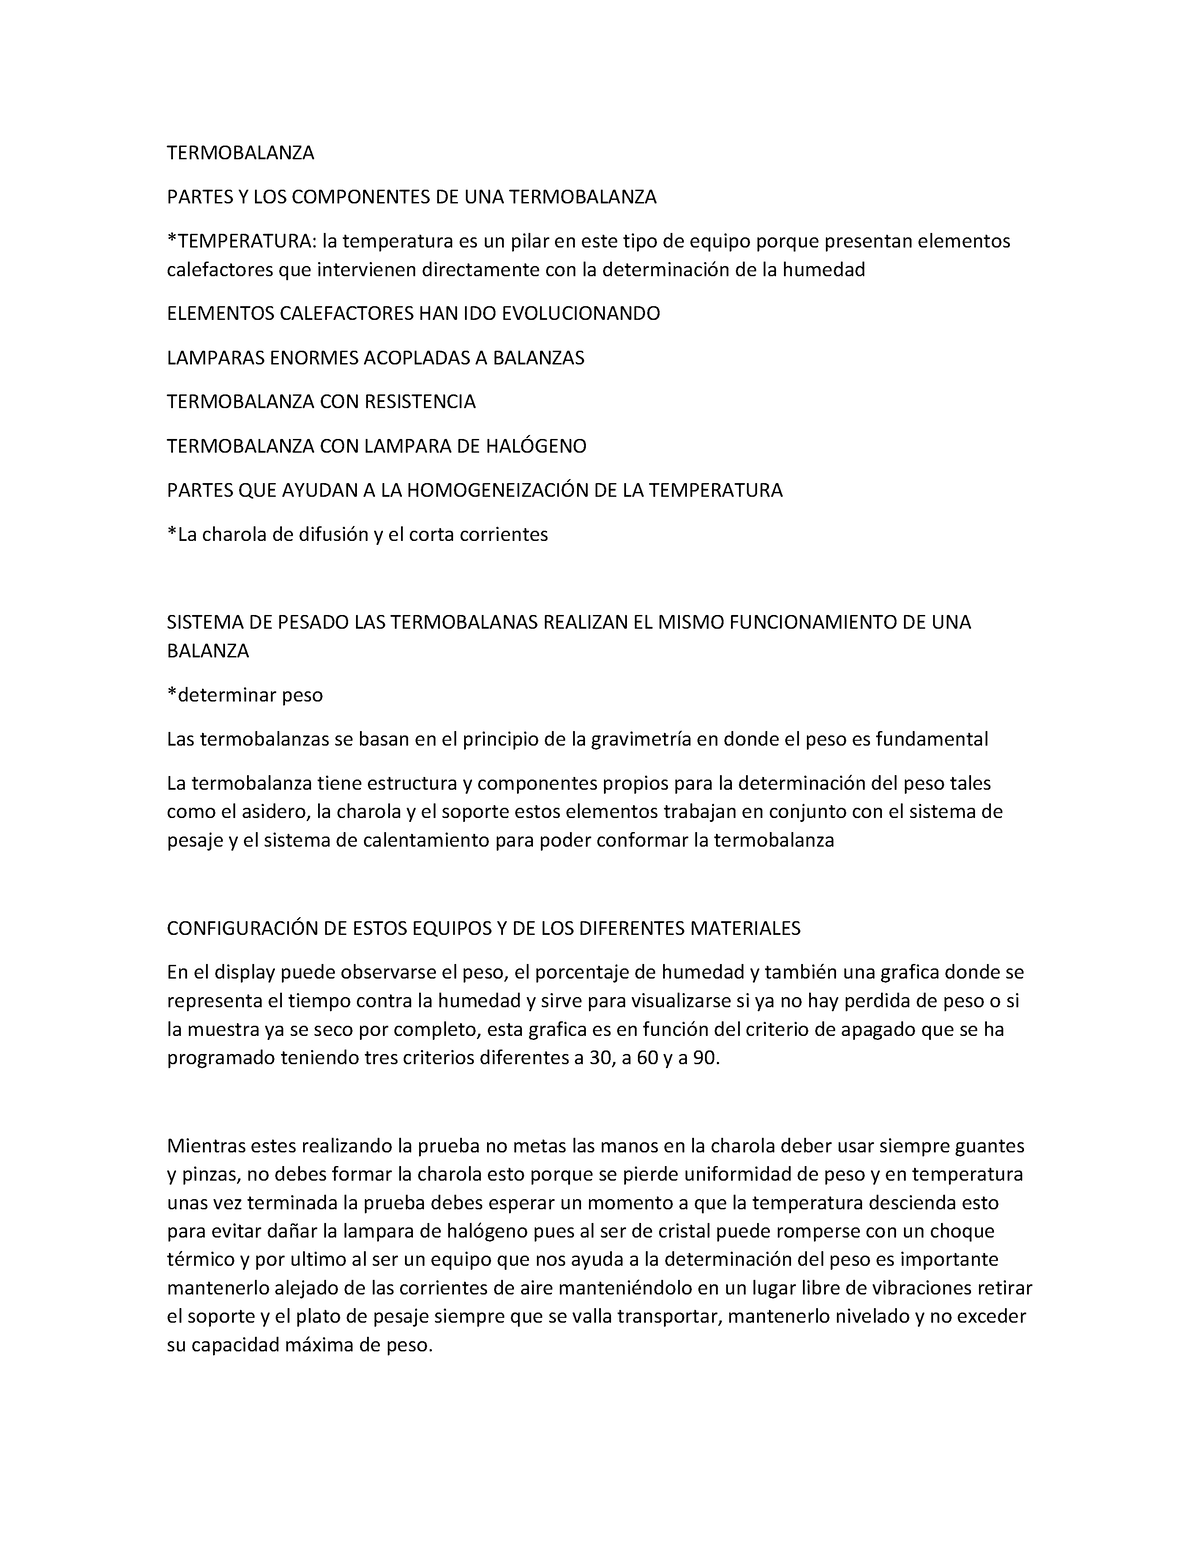 Termobalanza - 29/09/23 - TERMOBALANZA PARTES Y LOS COMPONENTES DE UNA ...